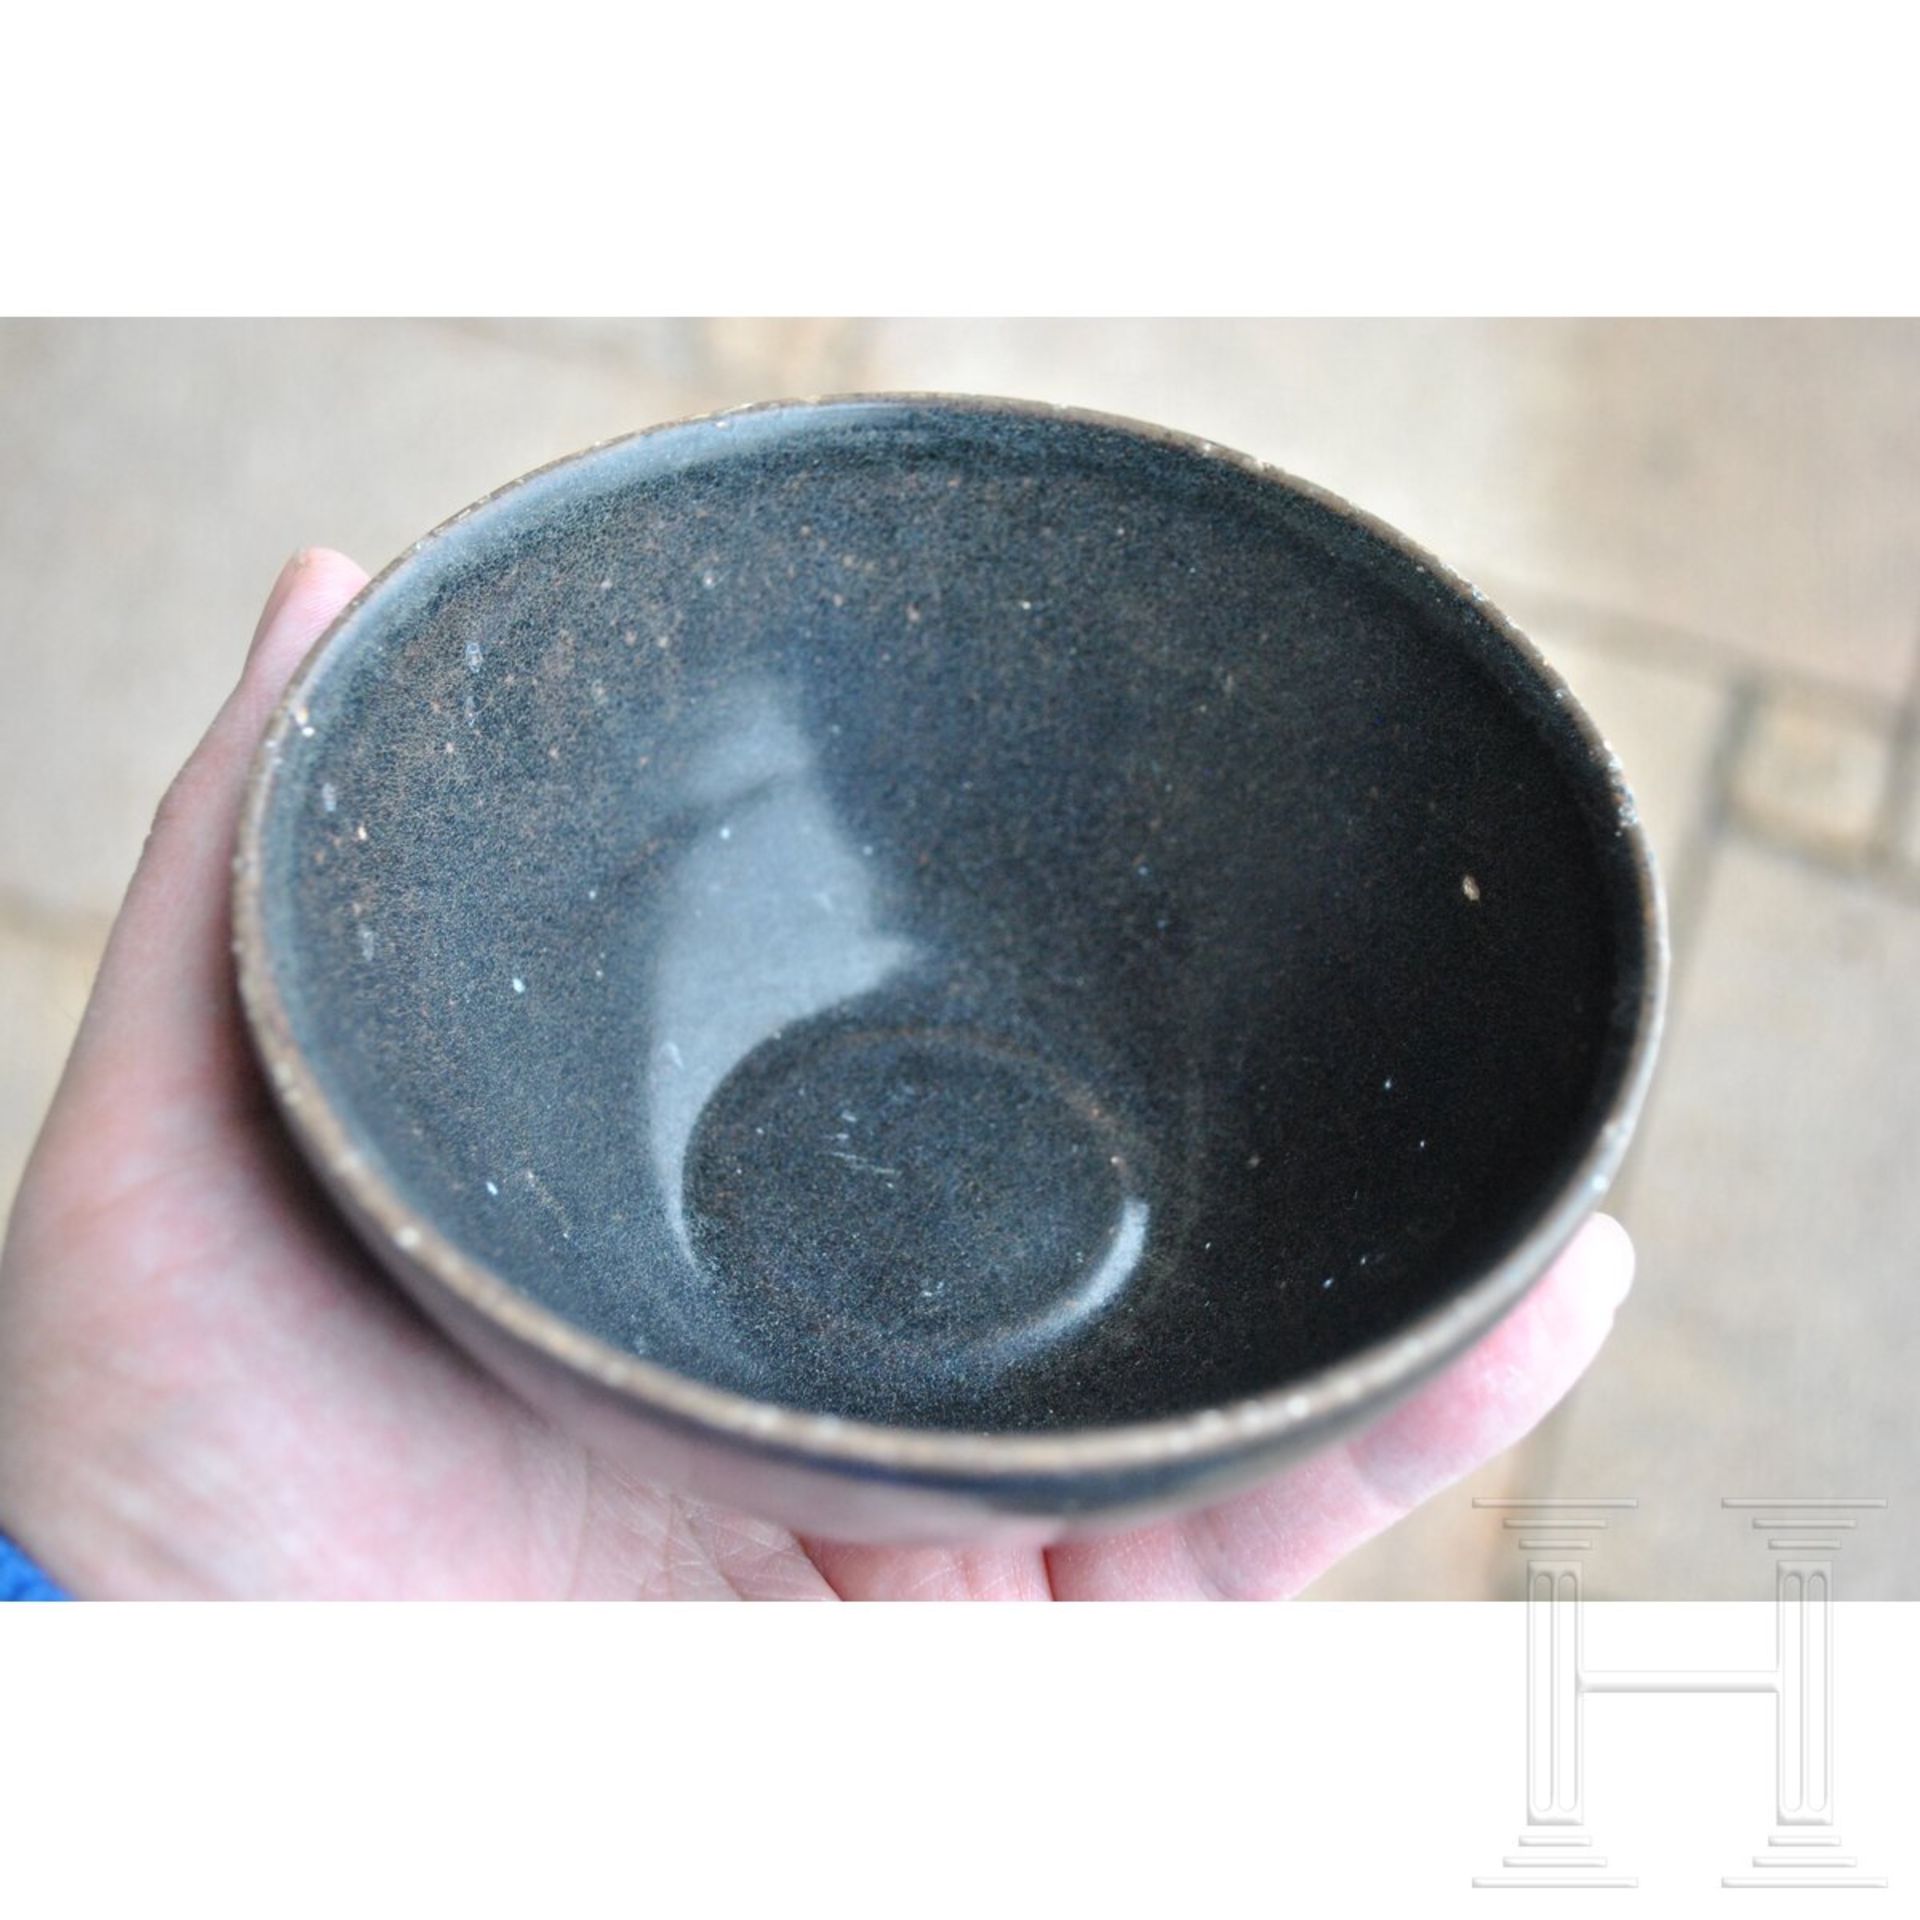 Jizhou-Teeschale, schwarz glasiert, wohl südliche Song-Dynastie (12. - 13. Jhdt.) - Image 8 of 17